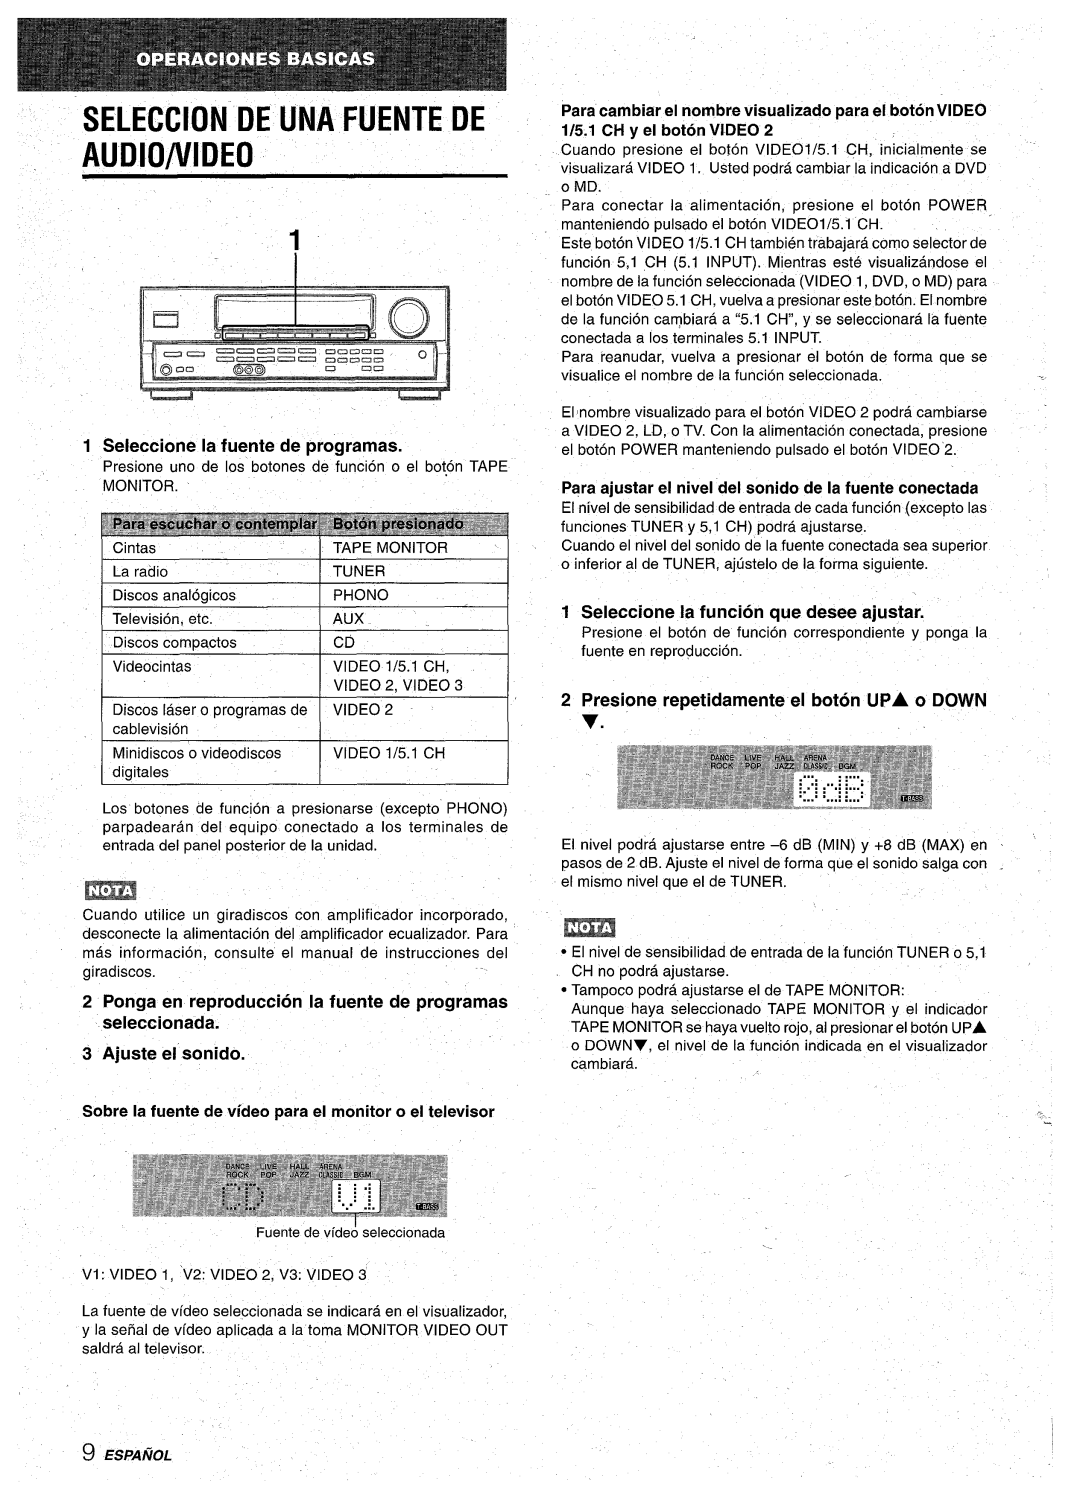 Aiwa AV-D30 manual SELECCION DE UNA FUENTE DE AUDIO/VIDEo, Seleccione la fuente de programas, Ajuste el sonido, MIN y +8 dB 